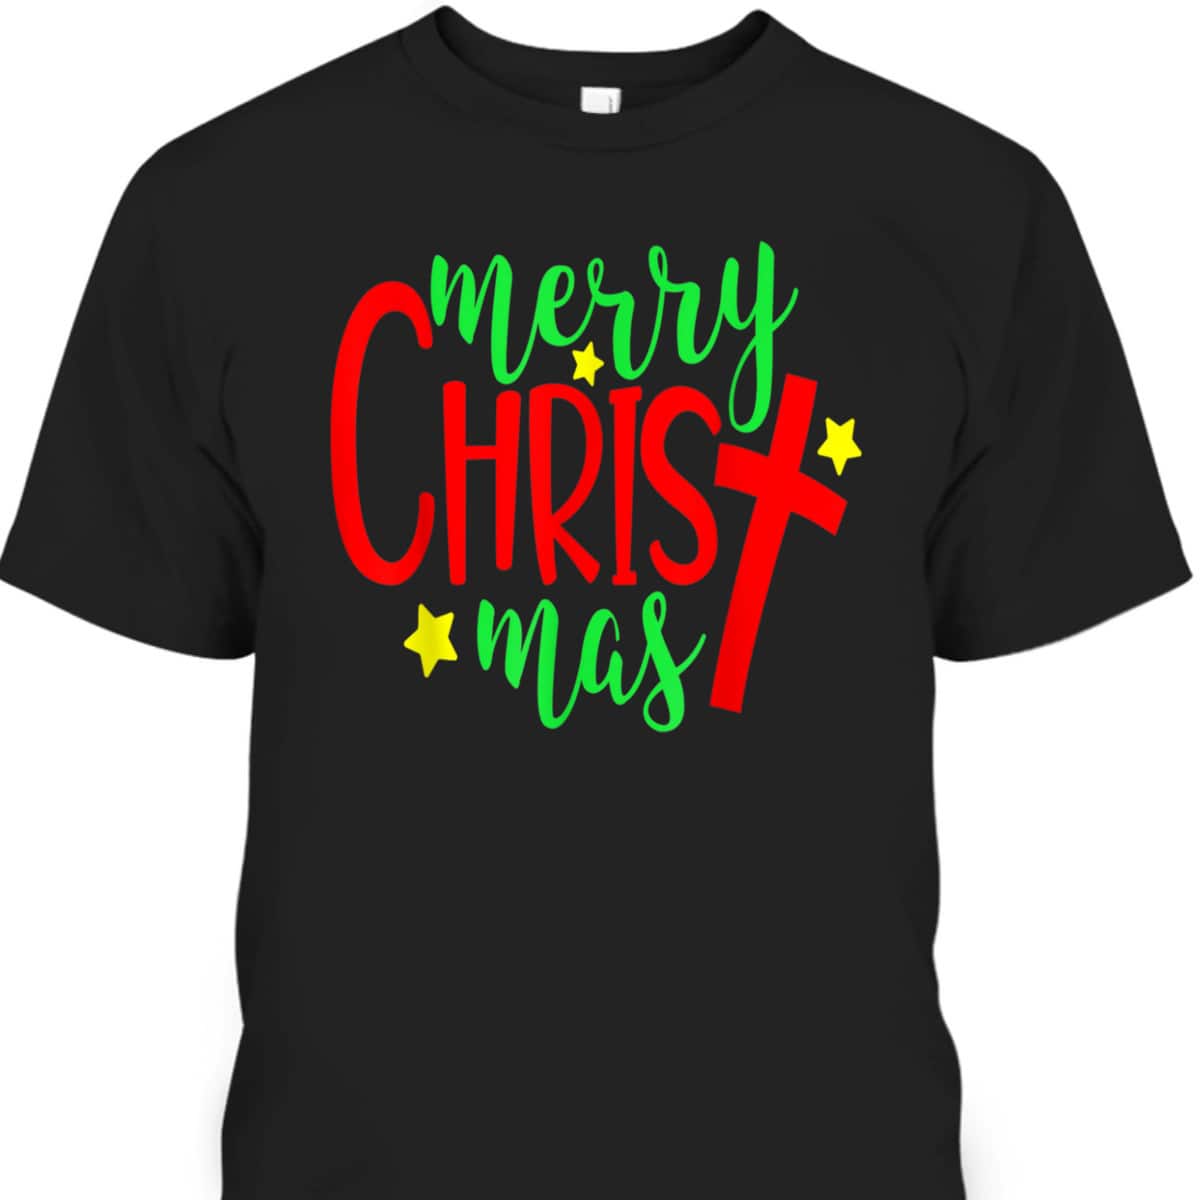 Merry Christmas-Christmas Christian Cross T-Shirt